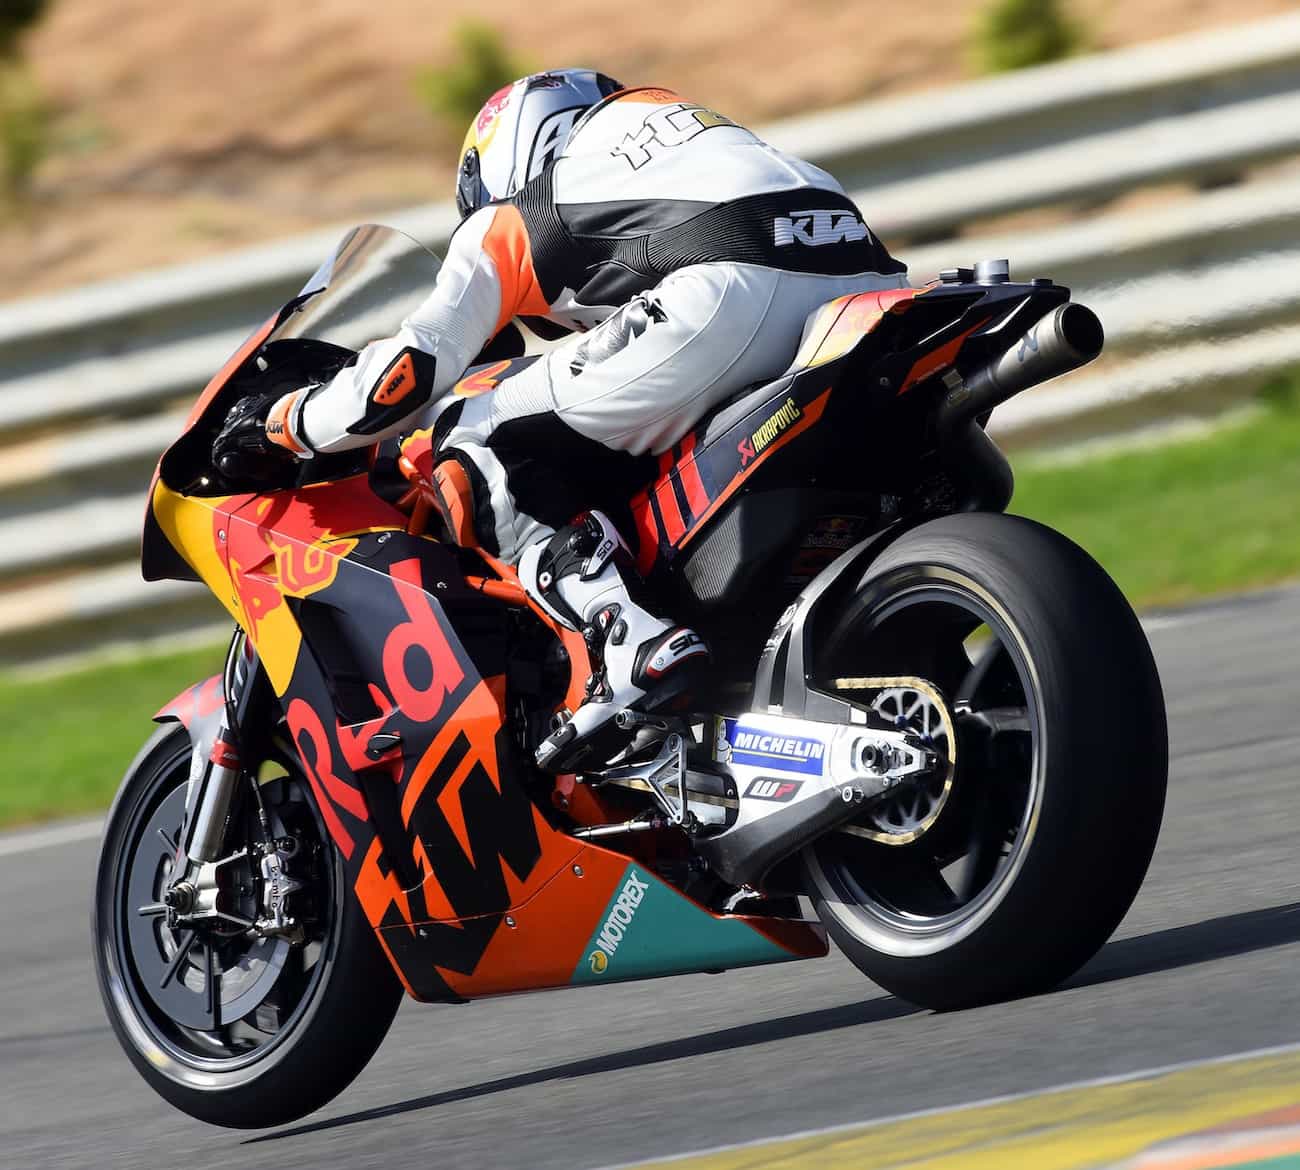 托尼 开罗利 Tony Cairoli 测试ktm的motogp Rc16公路赛车越野摩托车行动杂志